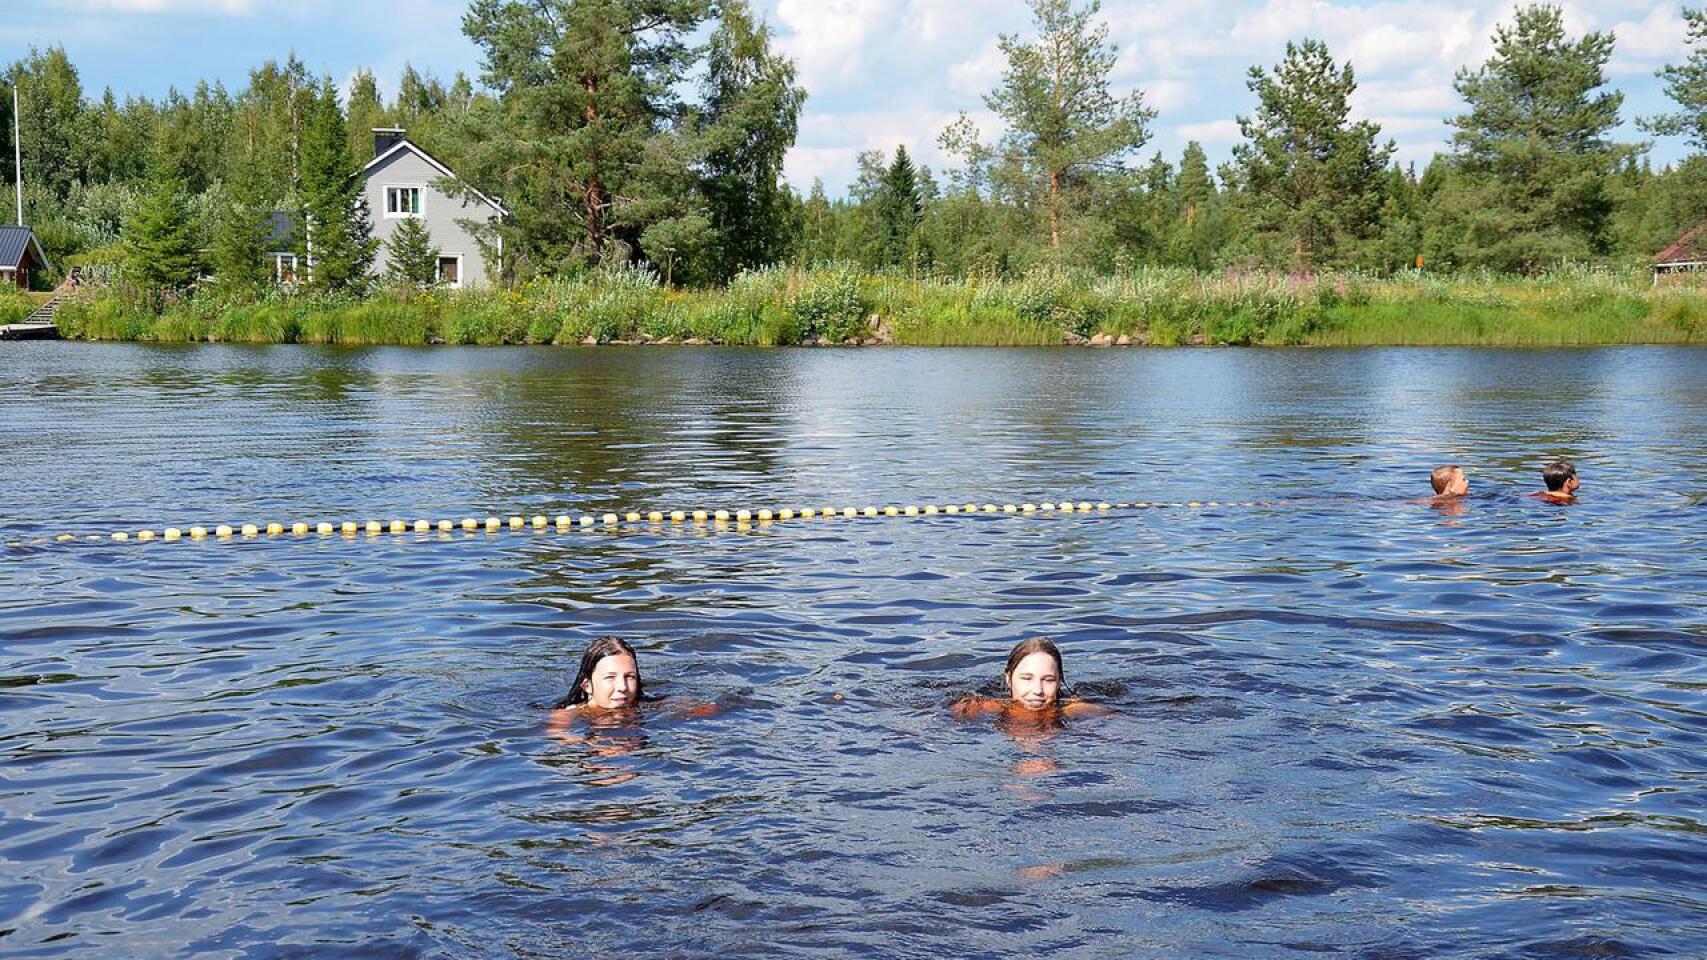 Sani Paananen ja Jane Alasuutari olivat uimassa Ylivieskan Hamarilla viime keskiviikkona 25. heinäkuuta, jolloin mitattiin tähän mennessä Ylivieskan kesän korkein lämpötila 32,2 astetta.
